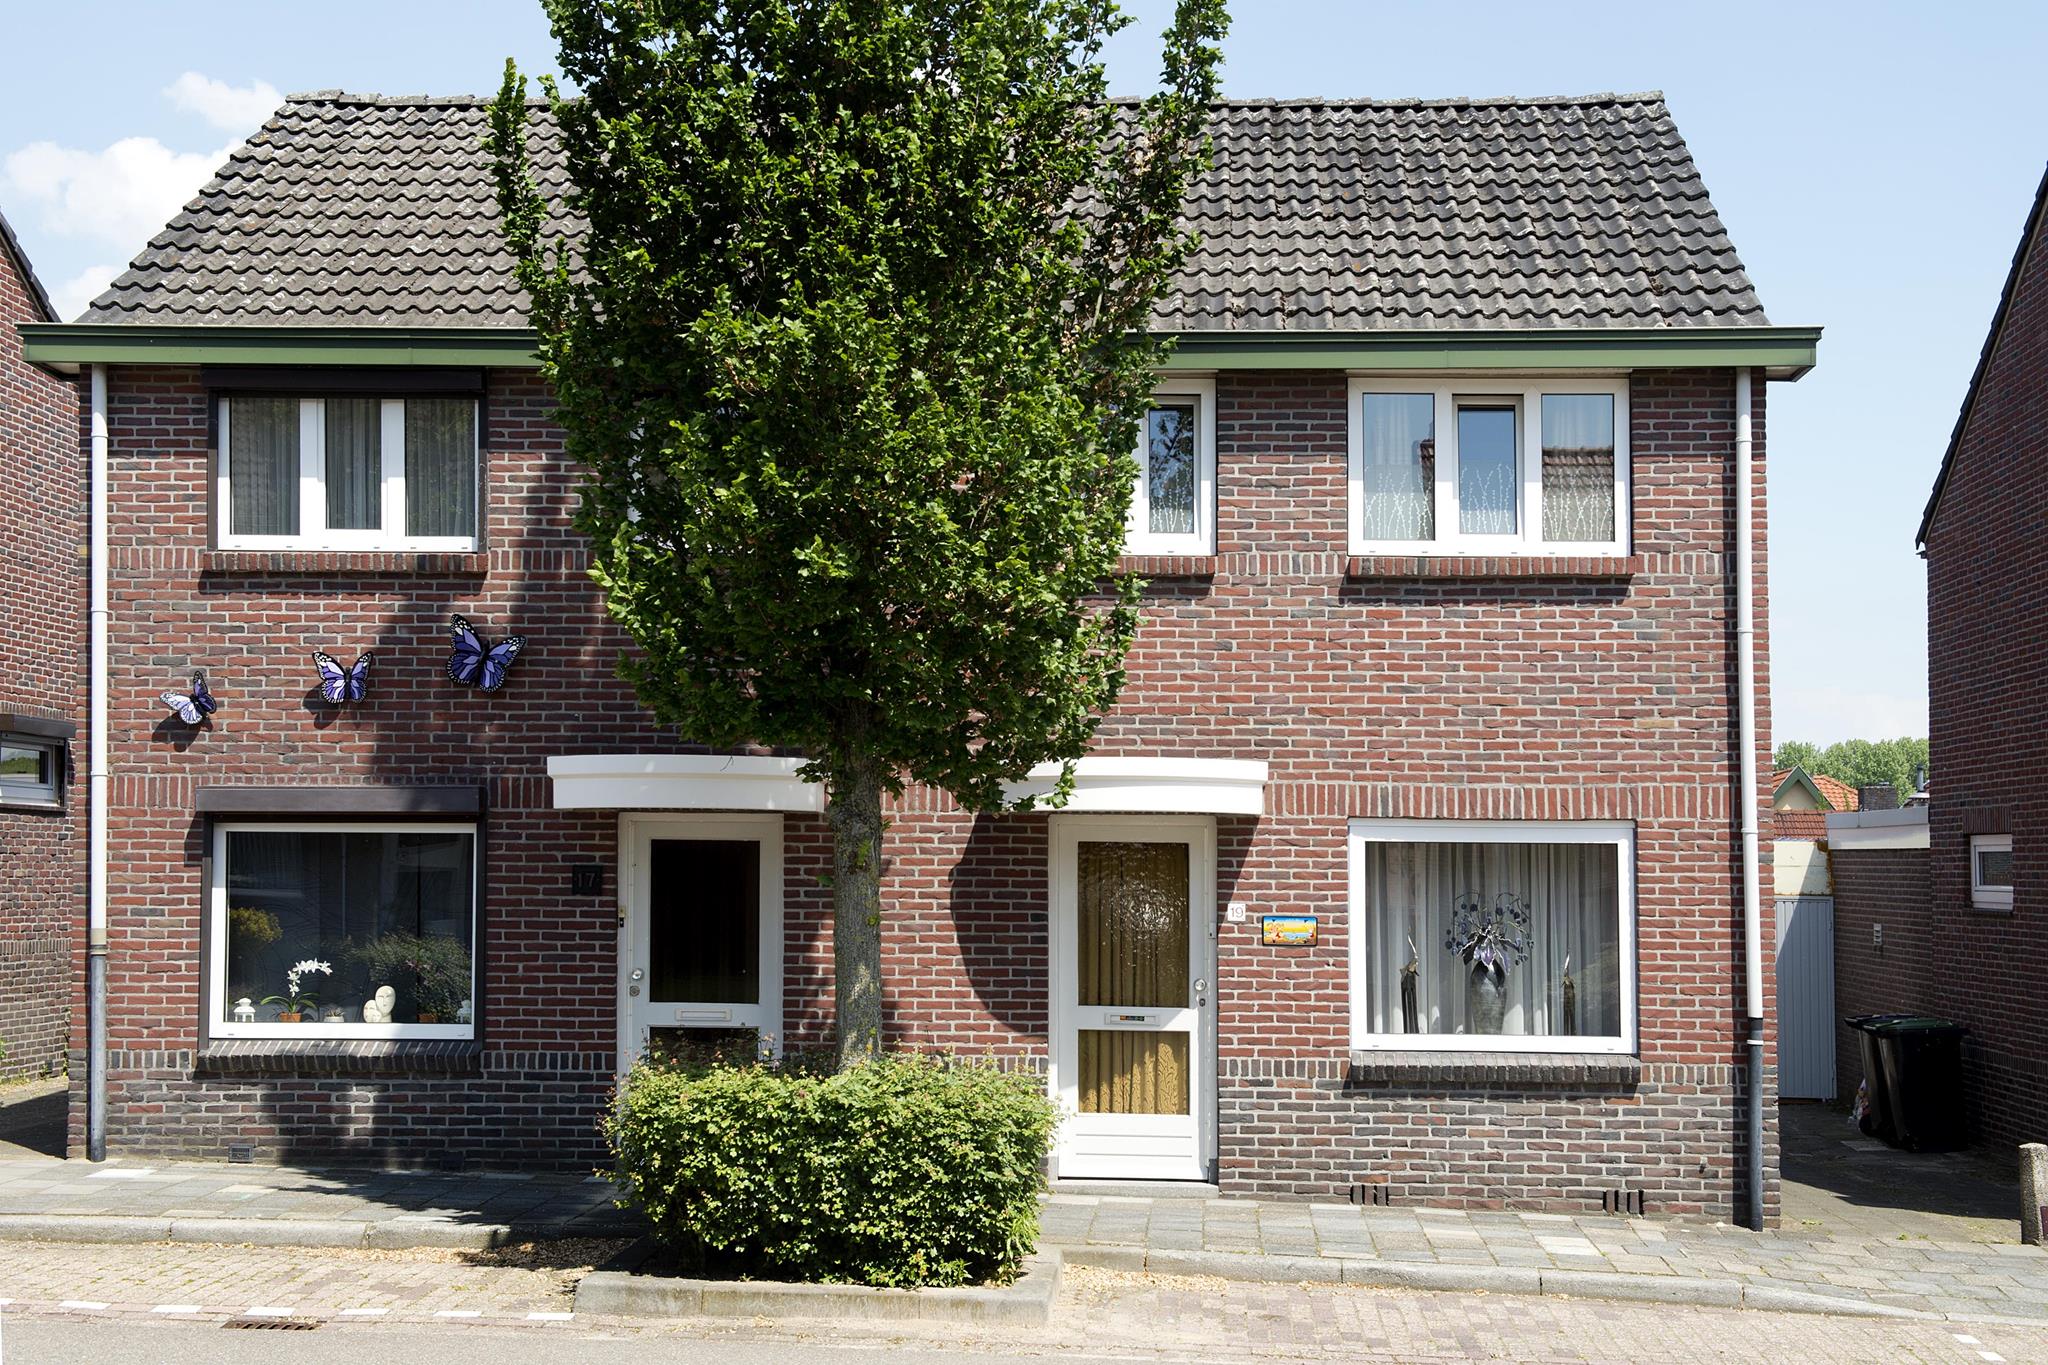 Dwarsstraat 25, 6361 XM Nuth, Nederland